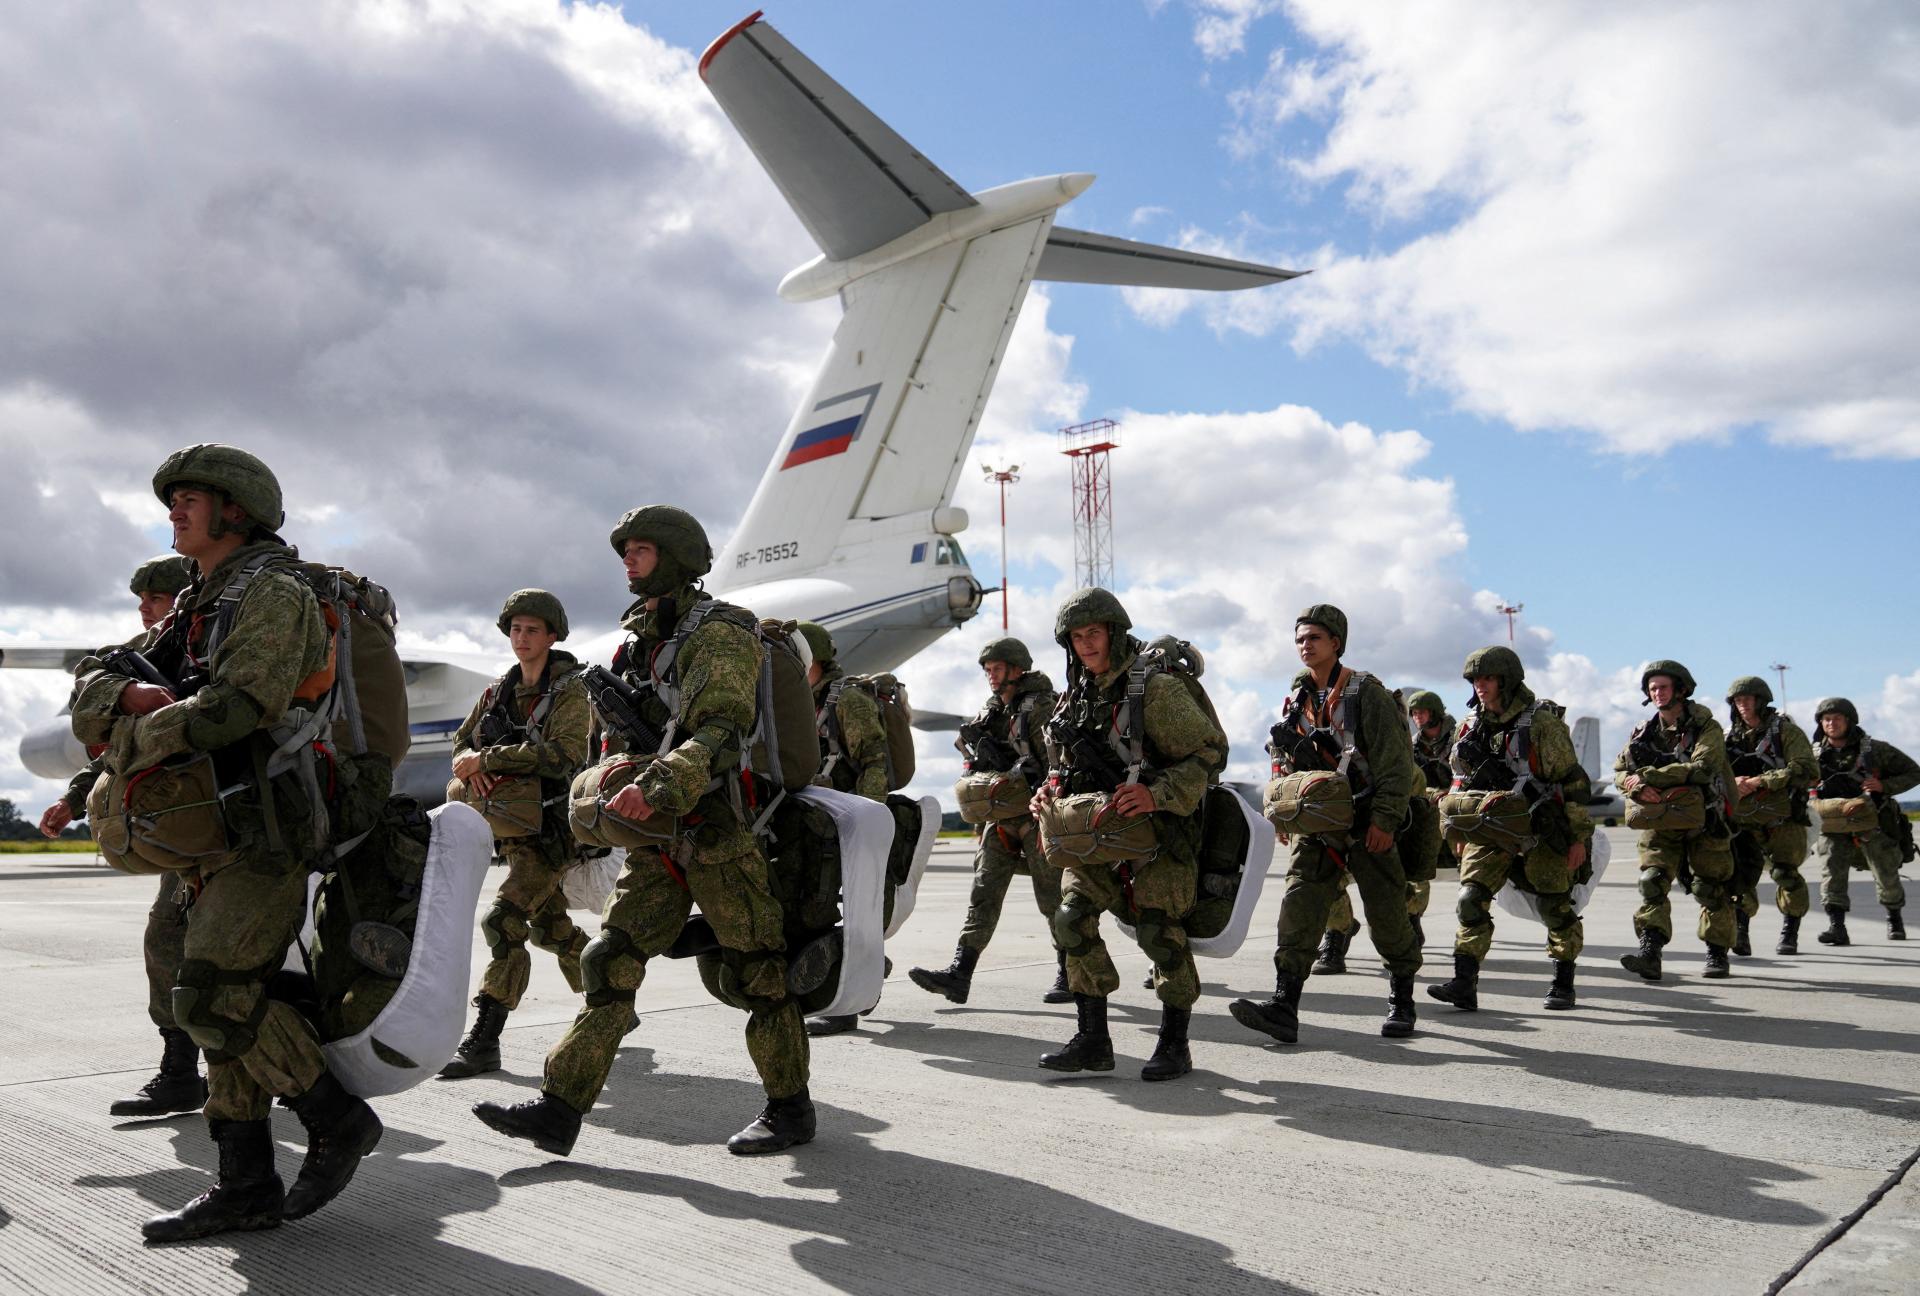 Rusi dorovnávajú straty. Do armády denne vstupuje tisíc ľudí, tvrdí predstaviteľ ukrajinskej rozviedky
​